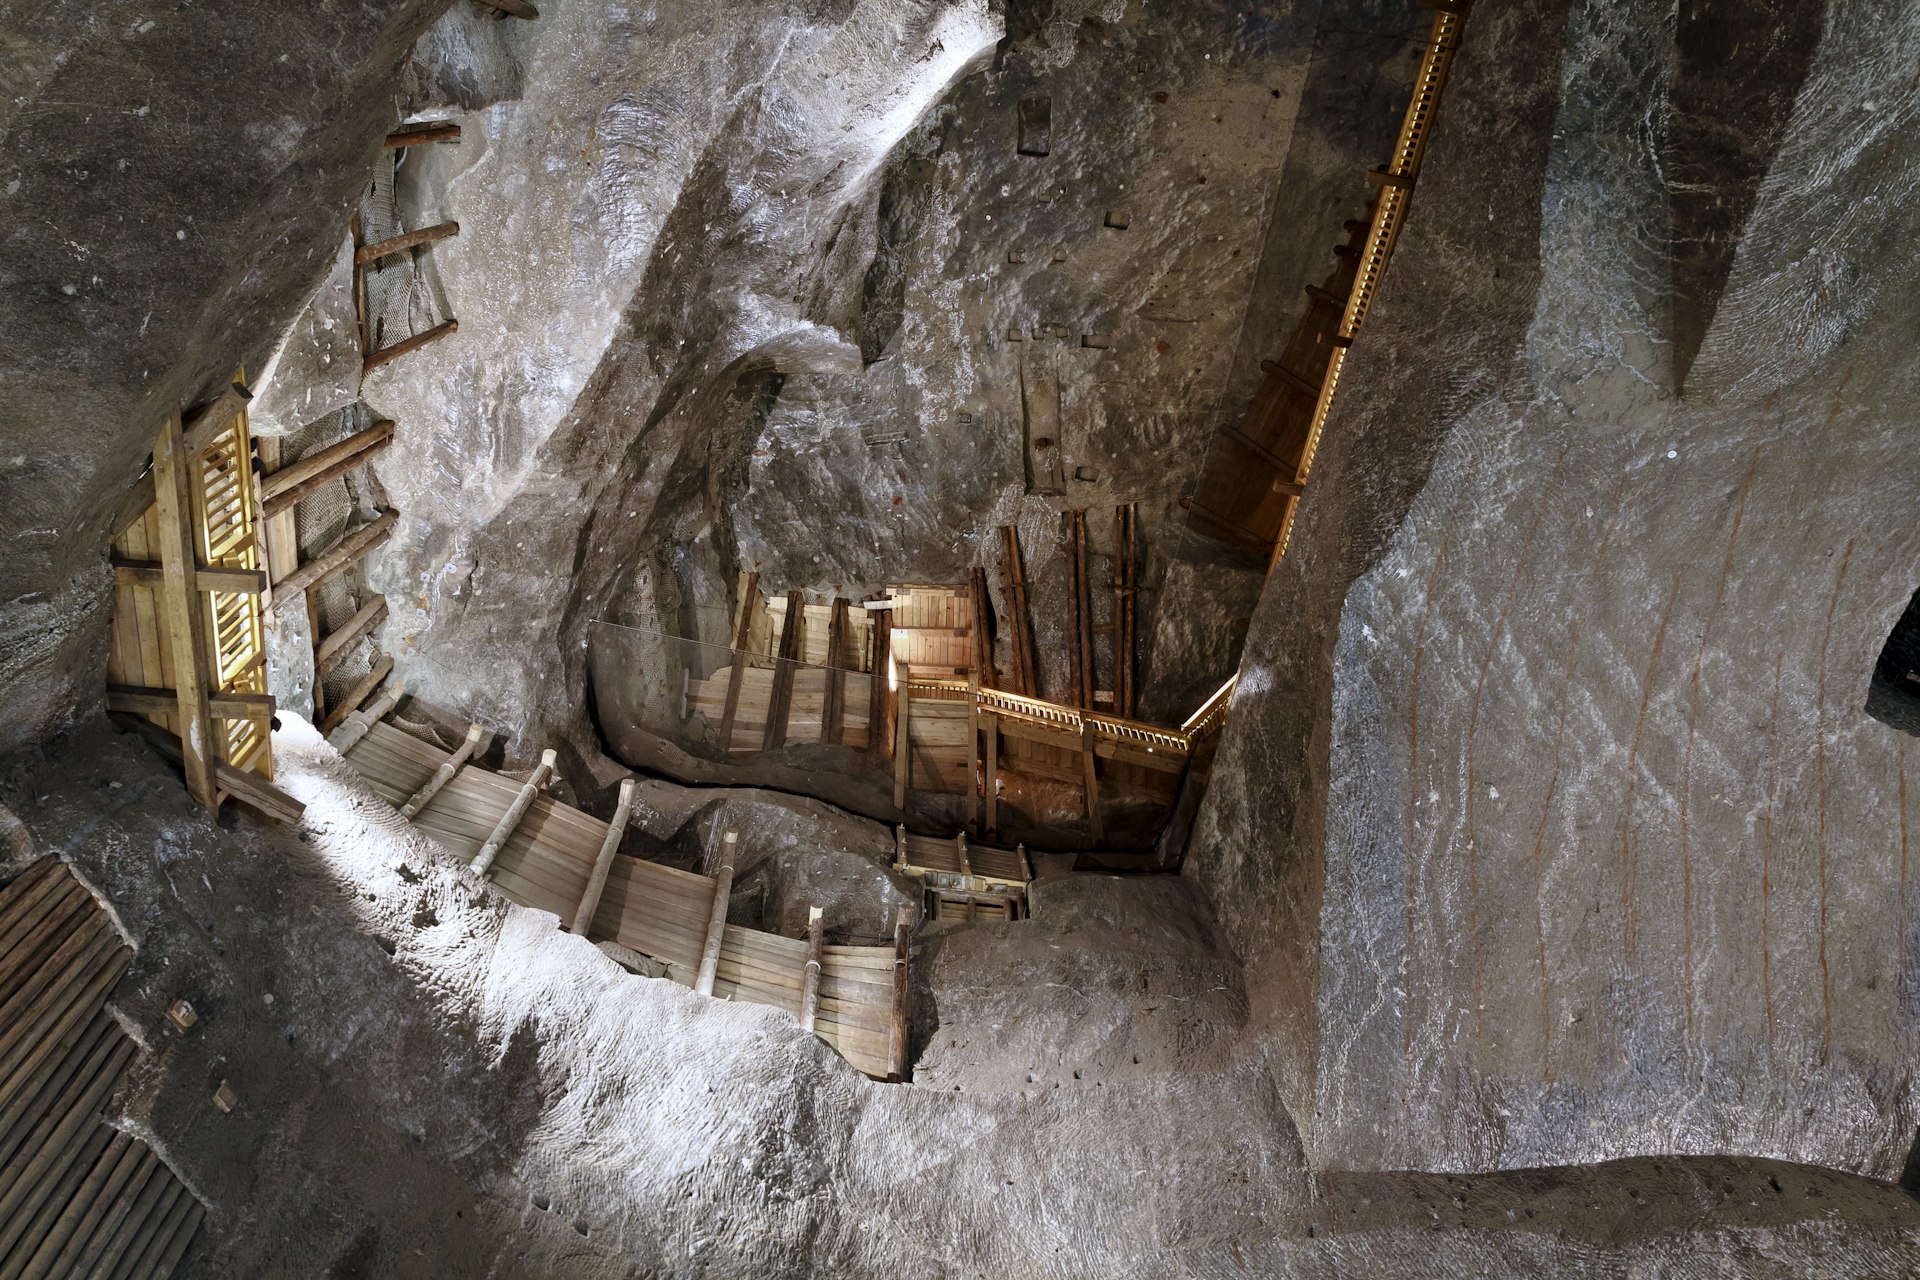 Wooden stairways and pillars in a passageway in a salt mine